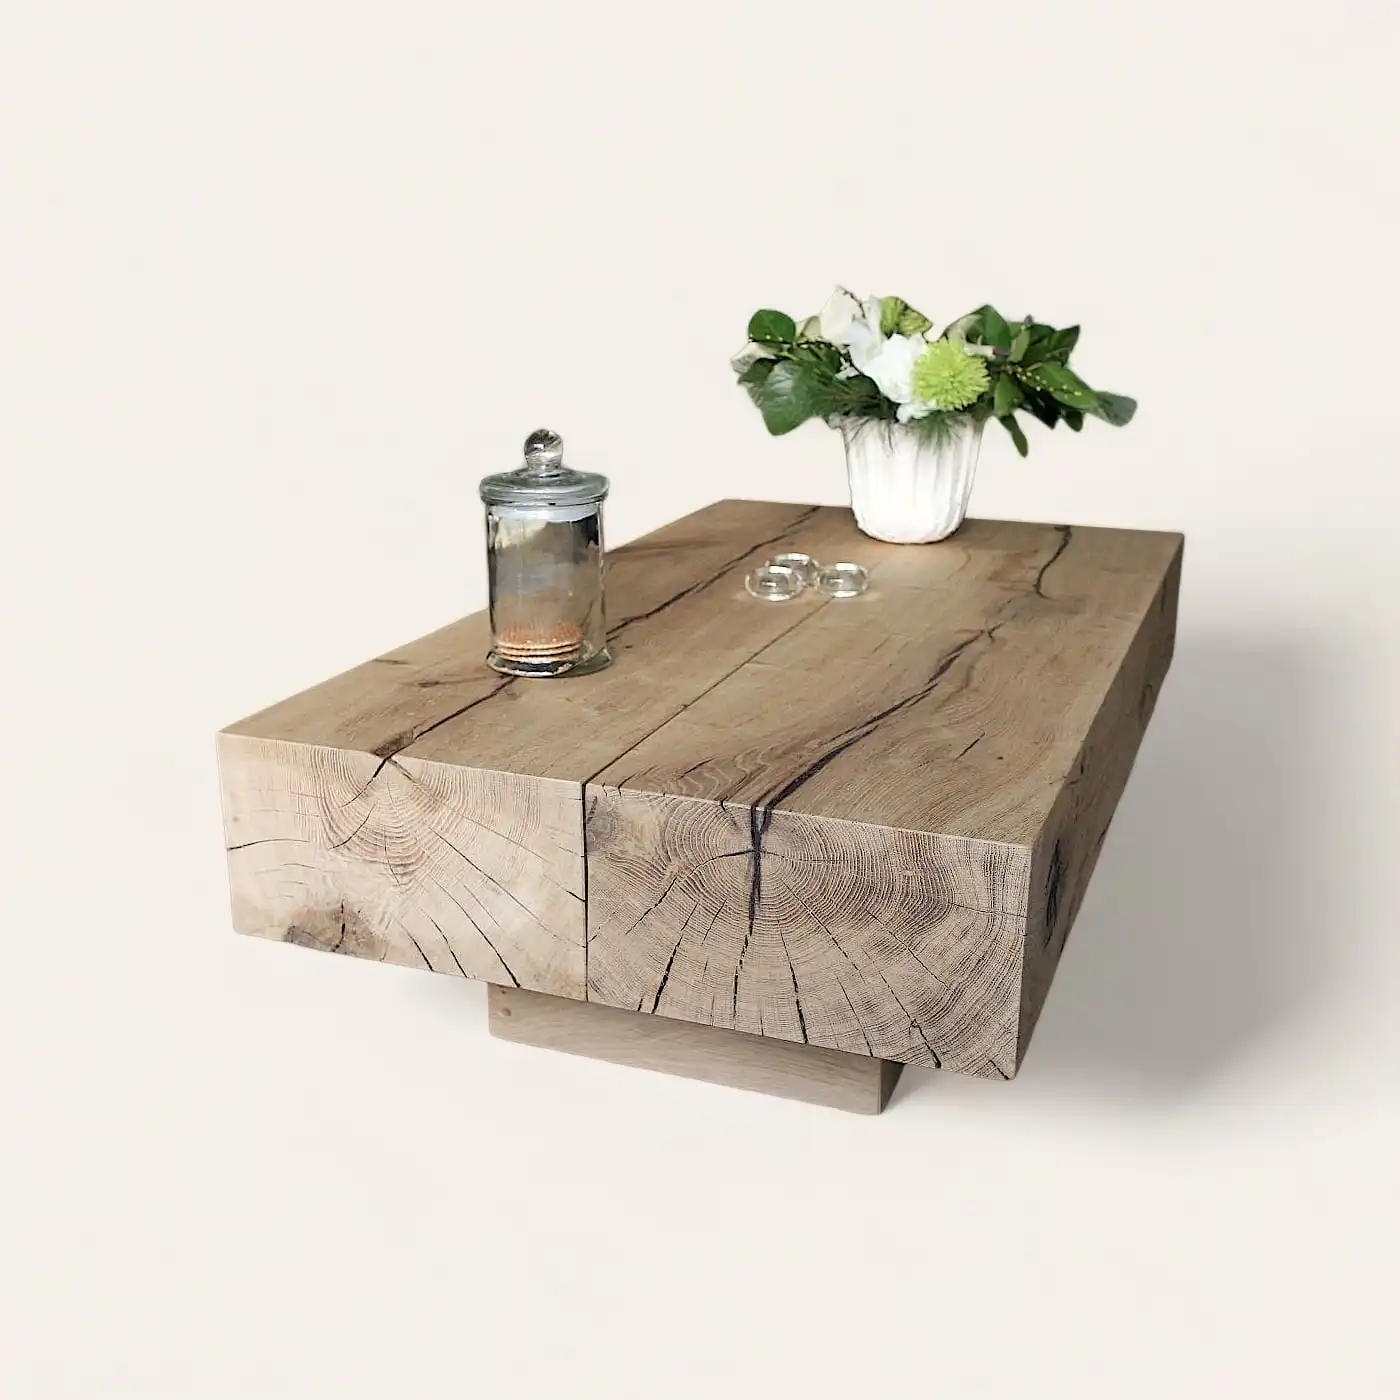  Une table basse en bois rustique surmontée d'un vase. 